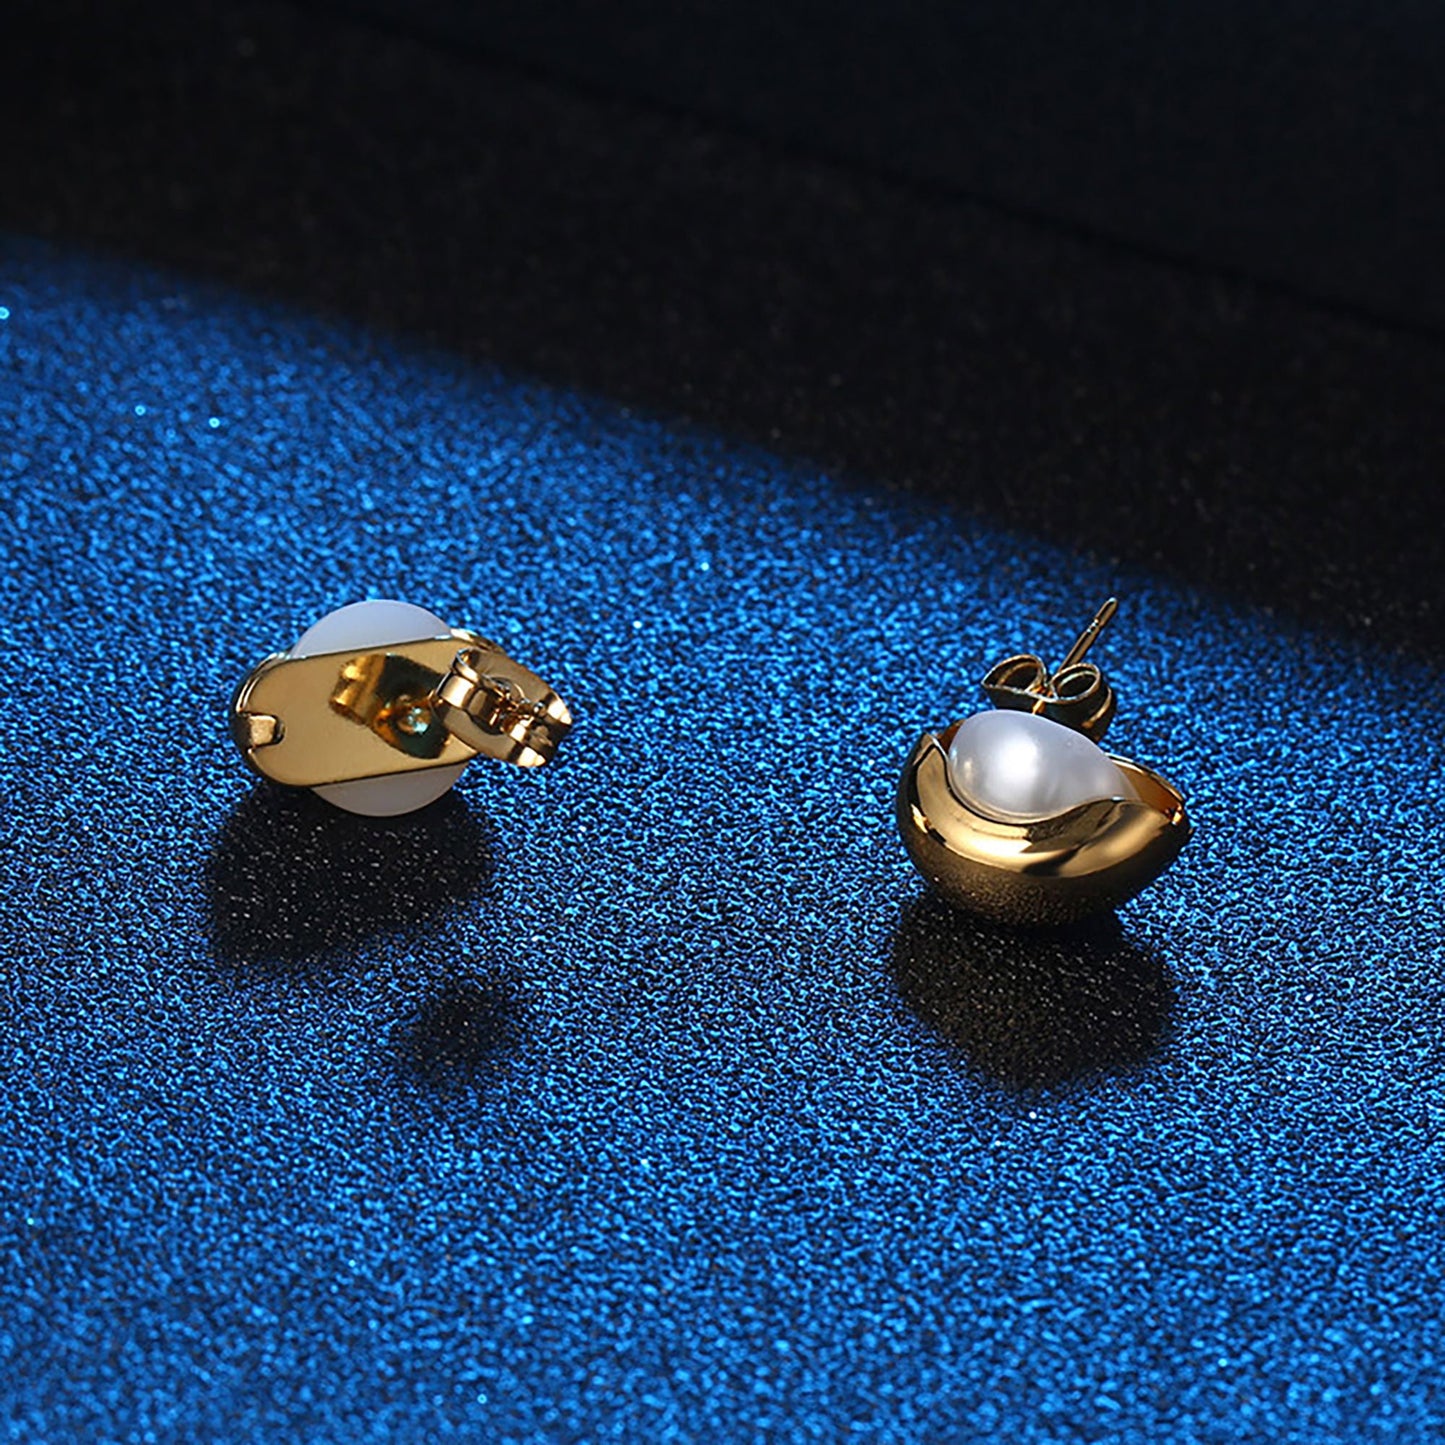 Titanium Pearl Stud Earrings, Non Tarnish Earrings, Implant Grade Titanium Waterproof Earrings, Vintage Style Earrings, Minimal Earrings